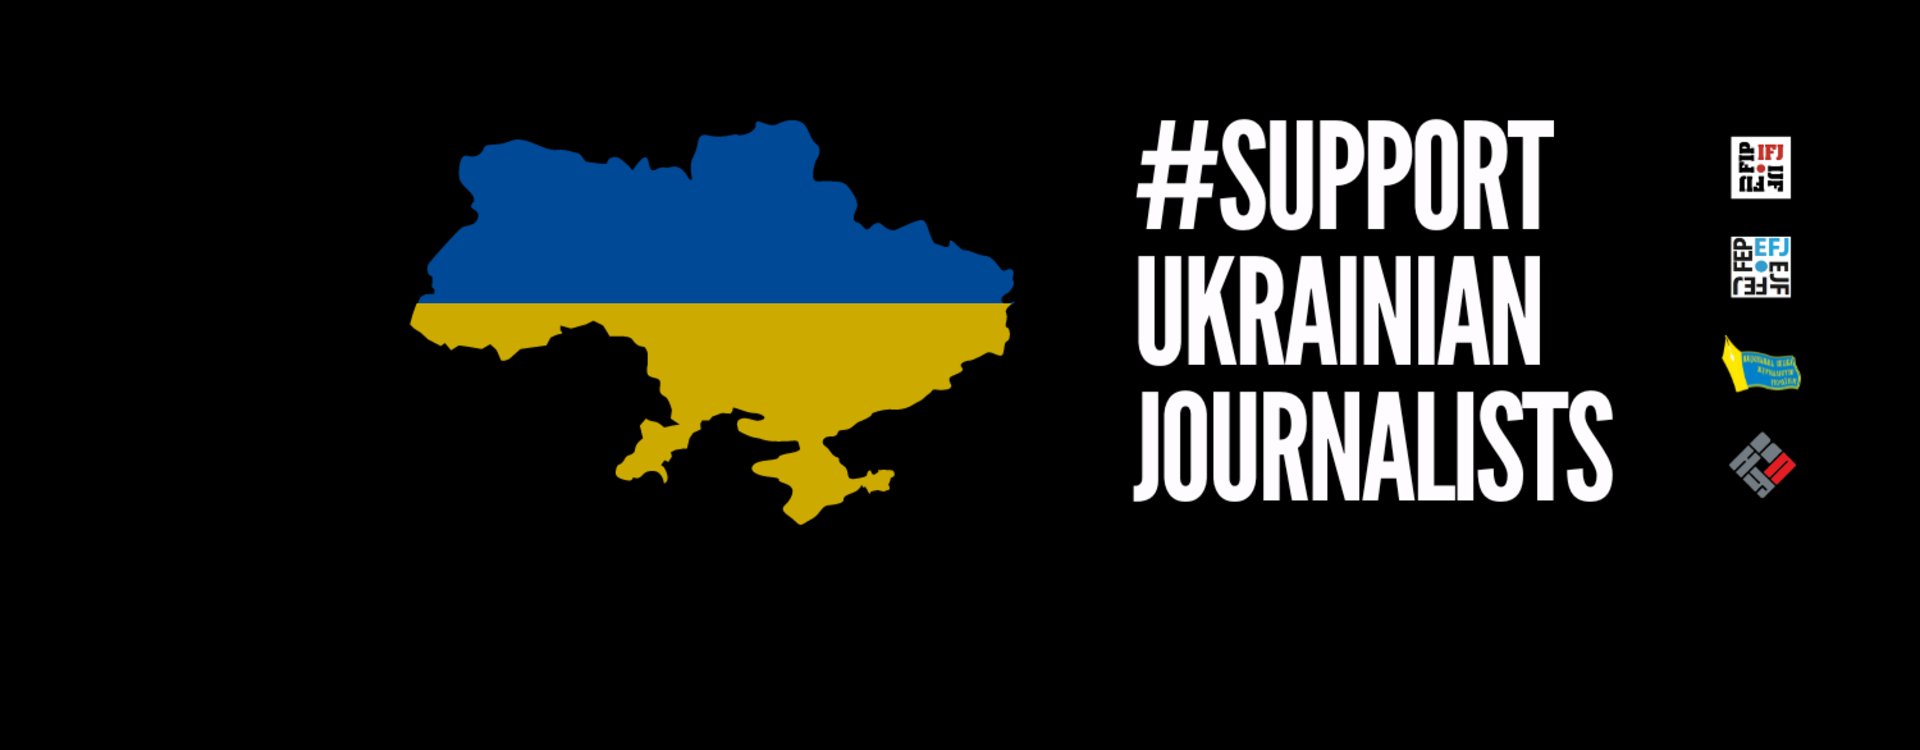 Journalists in Ukraine need our solidarity